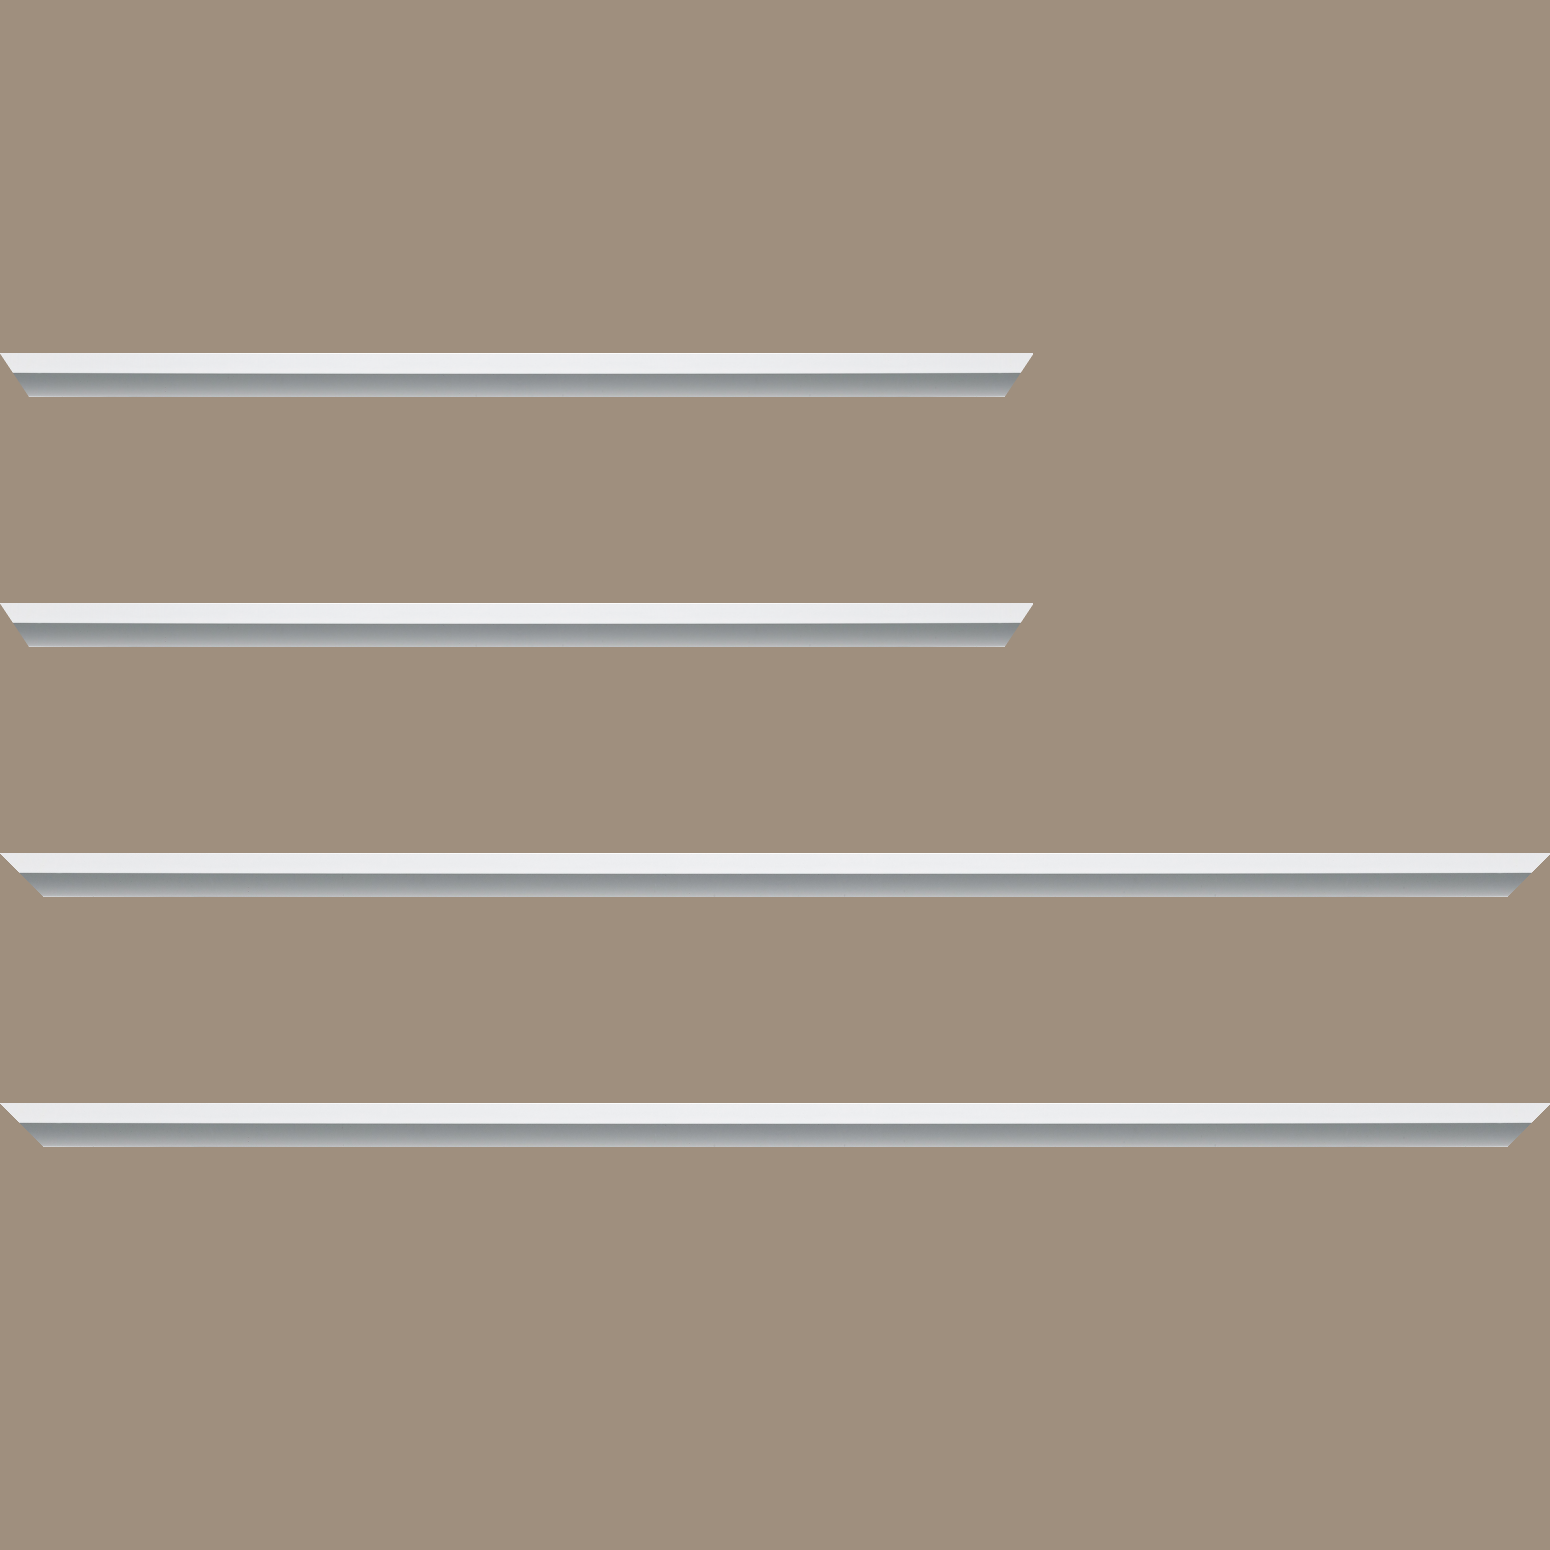 Baguette aluminium profil plat largeur 7mm, couleur blanc mat ,(le sujet qui sera glissé dans le cadre sera en retrait de 9mm de la face du cadre assurant un effet très contemporain) mise en place du sujet rapide et simple: assemblage du cadre par double équerre à vis (livré avec le système d'accrochage qui se glisse dans le profilé) encadrement non assemblé,  livré avec son sachet d'accessoires - 30x60